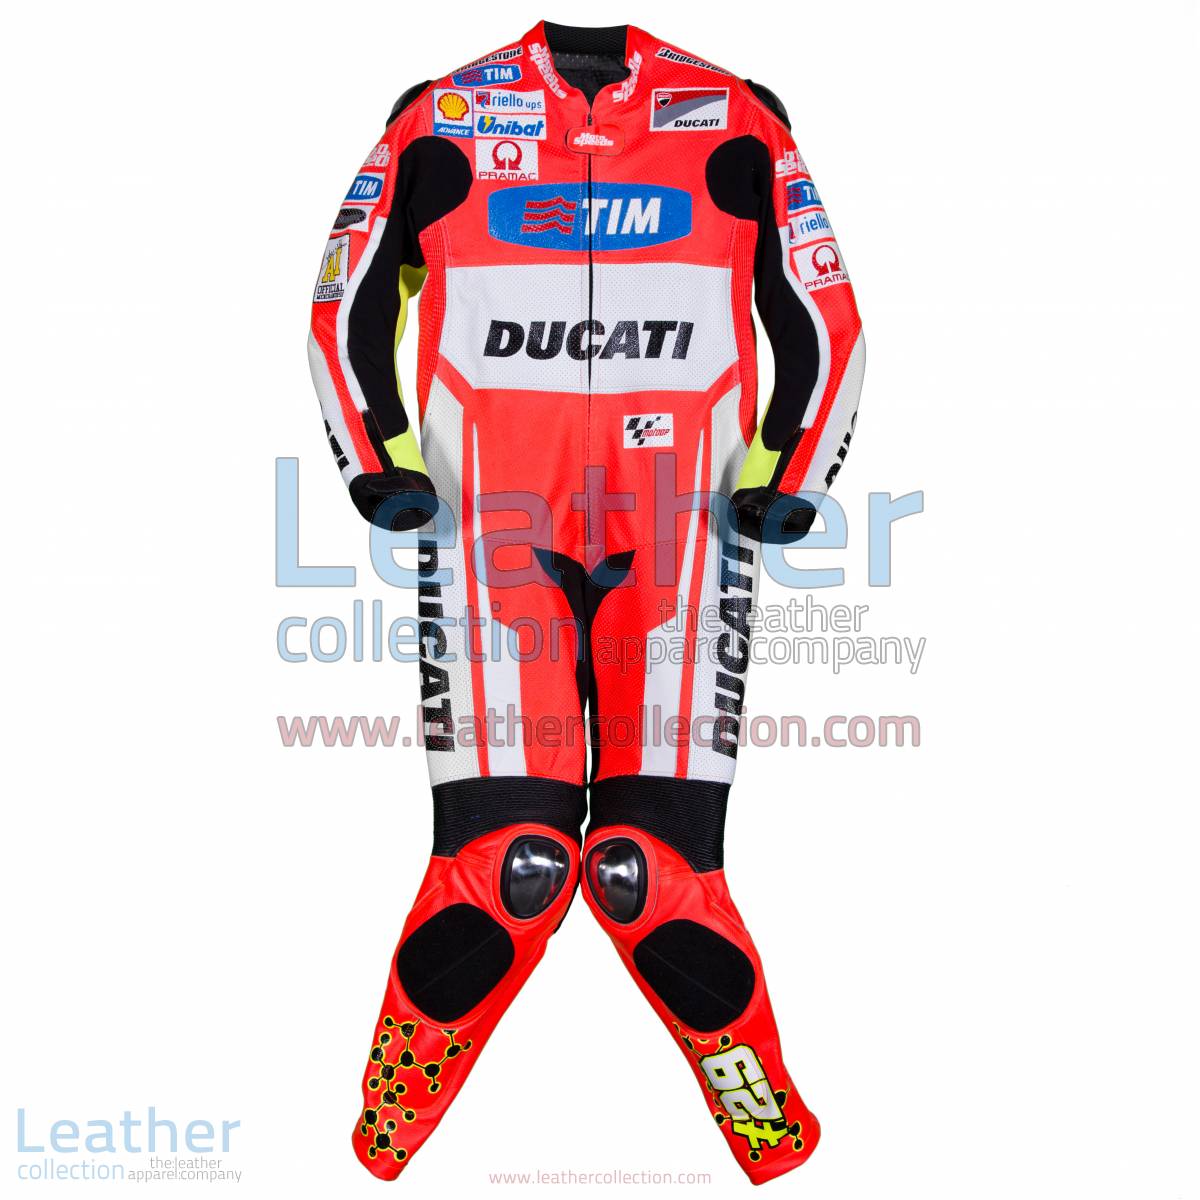 Andrea Iannone Ducati MotoGP 2015 Racing Suit | Ducati racing suit